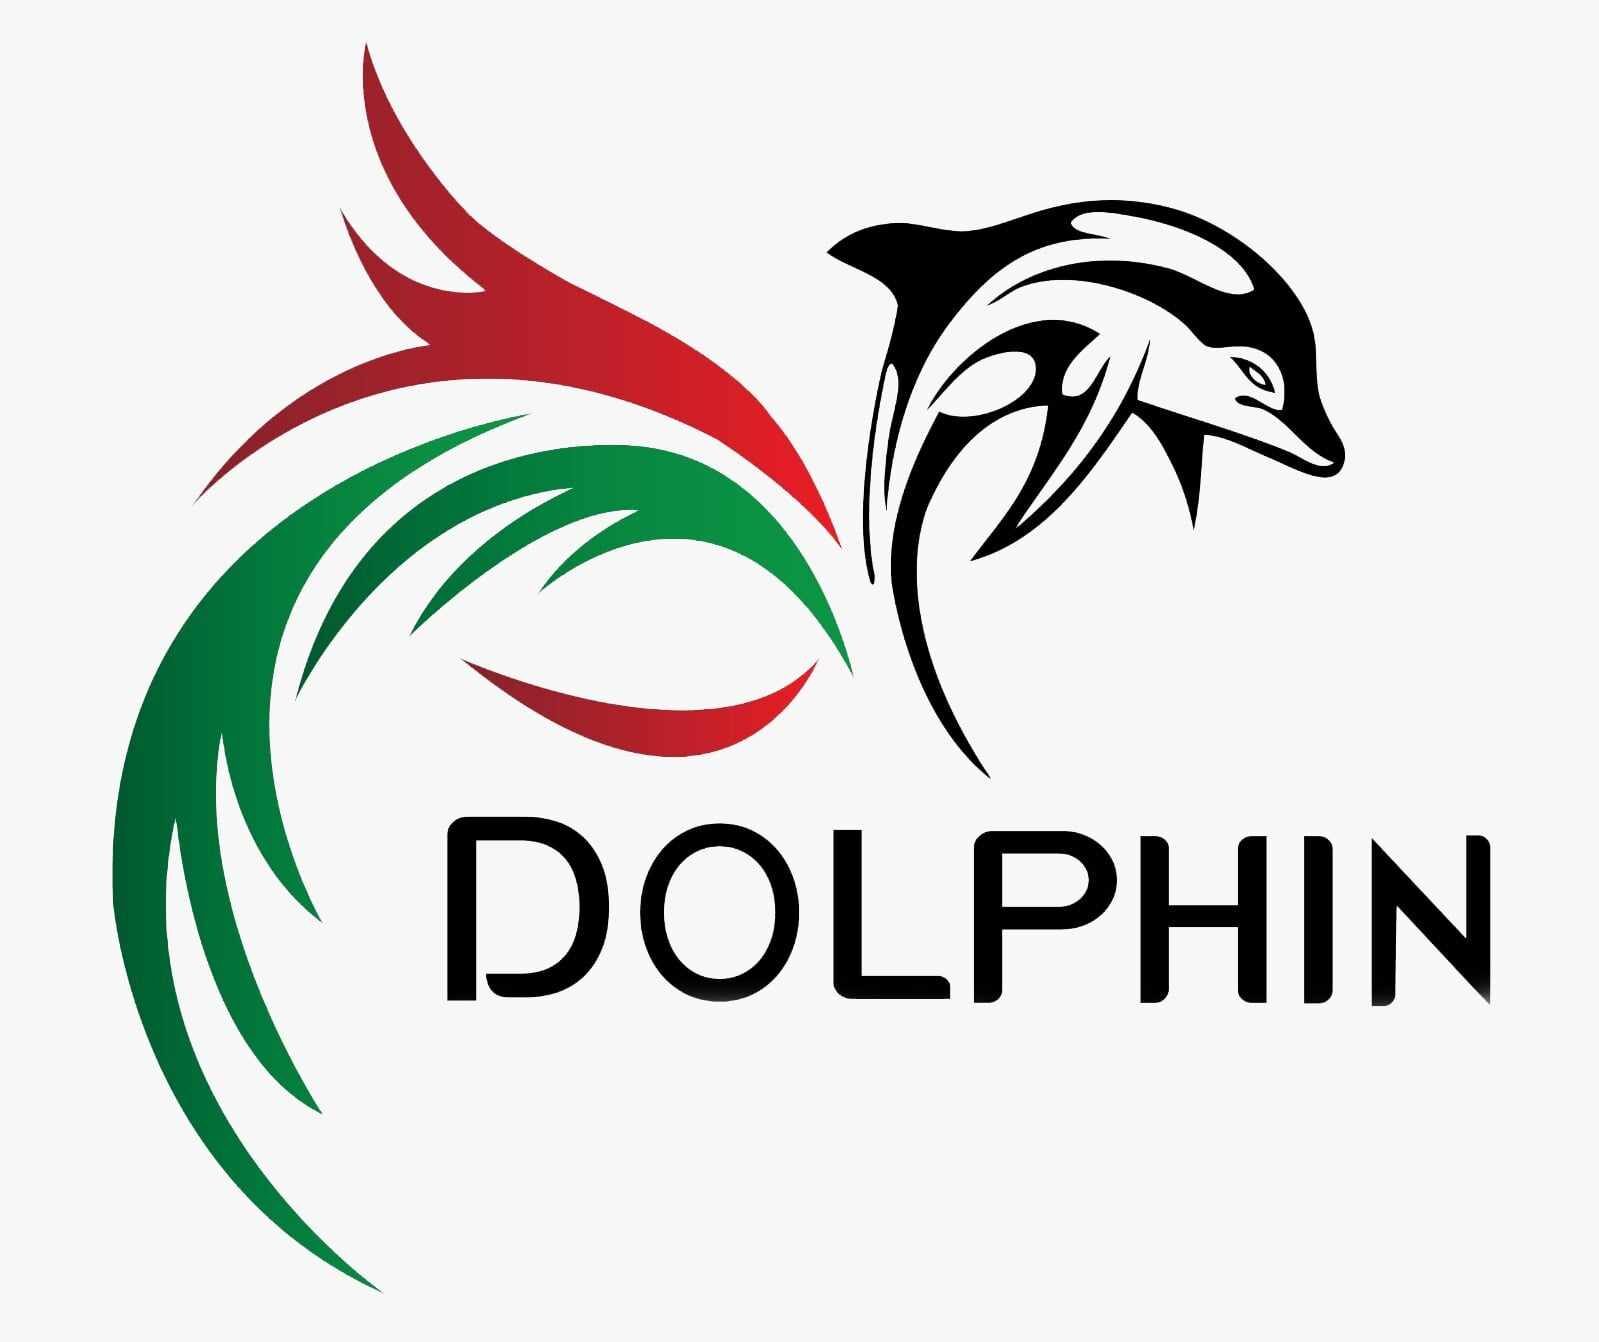 Dar Dolphin